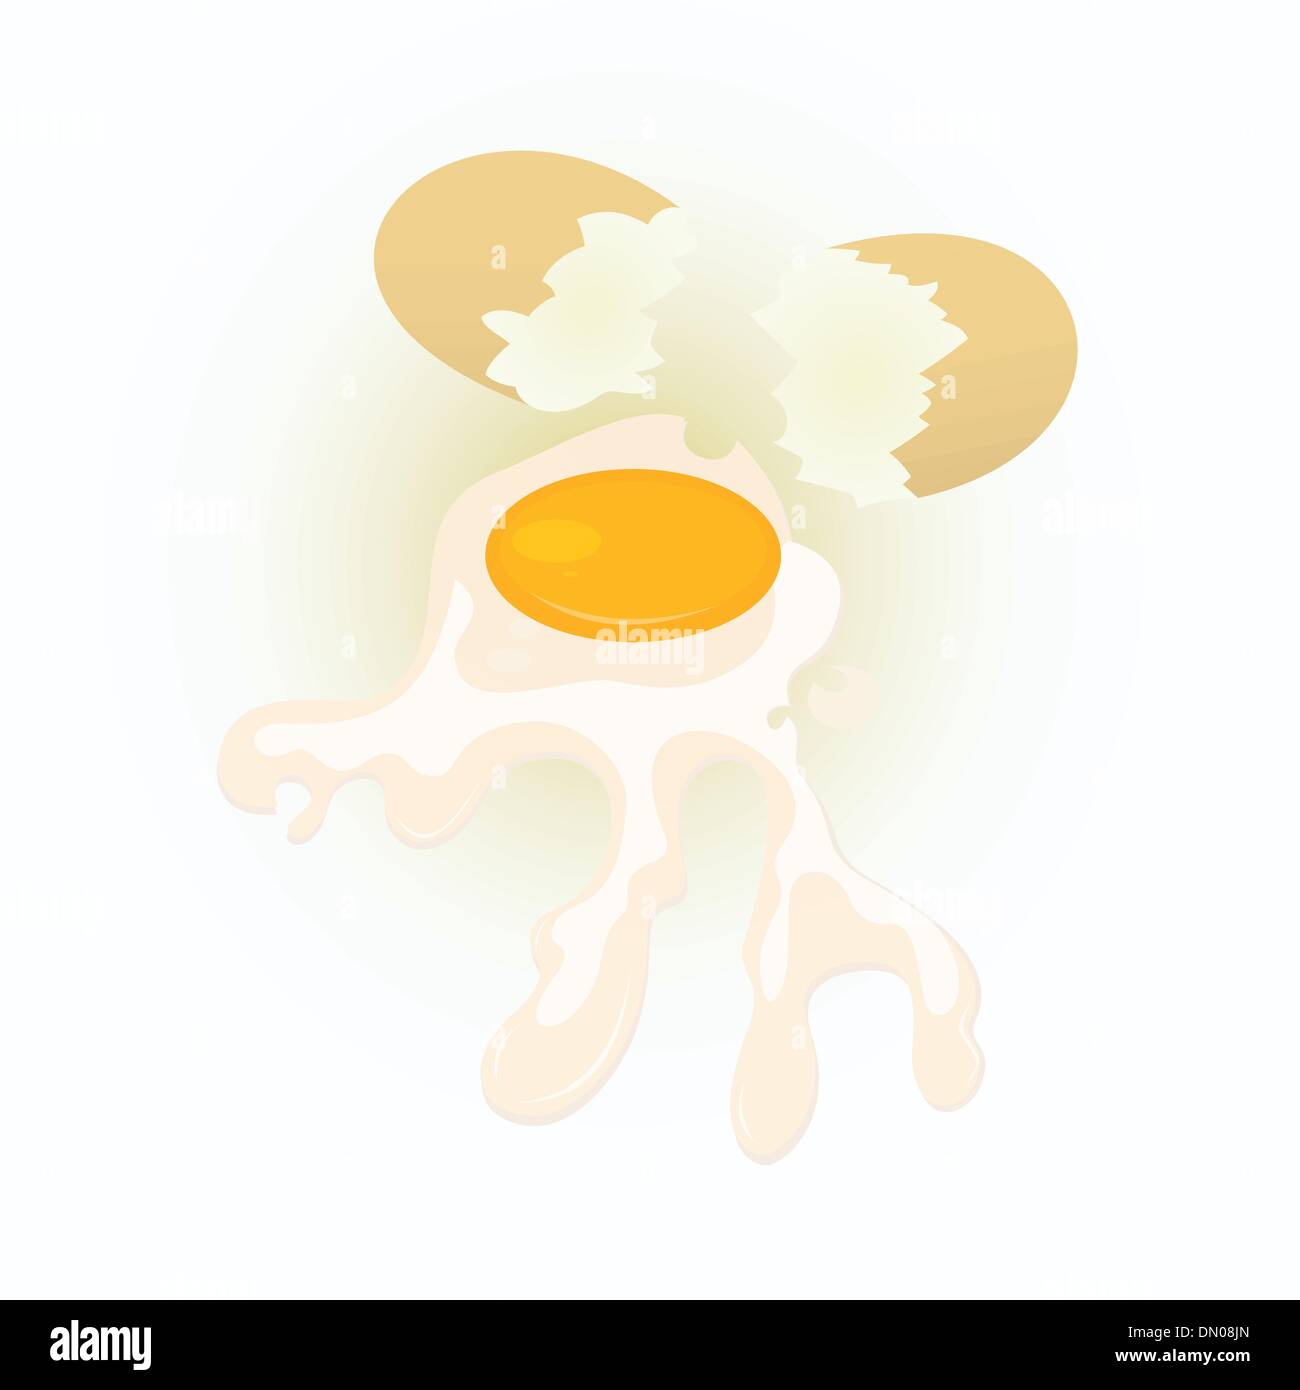 Broken-egg-and-eggshells-on-white-background Stock Vector